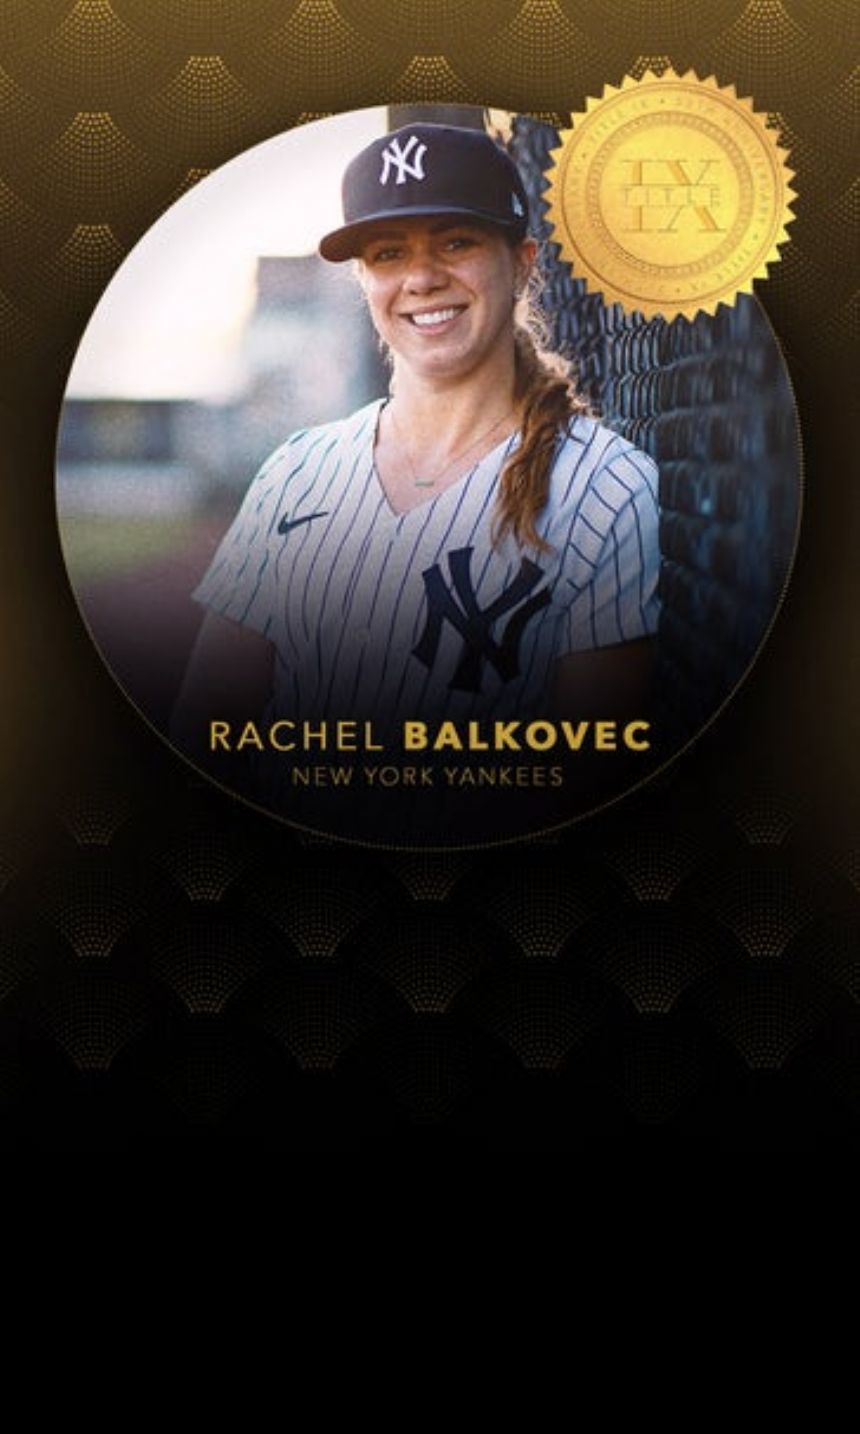 Title IX stories: Yankees' Class-A manager Rachel Balkovec never gave up quest